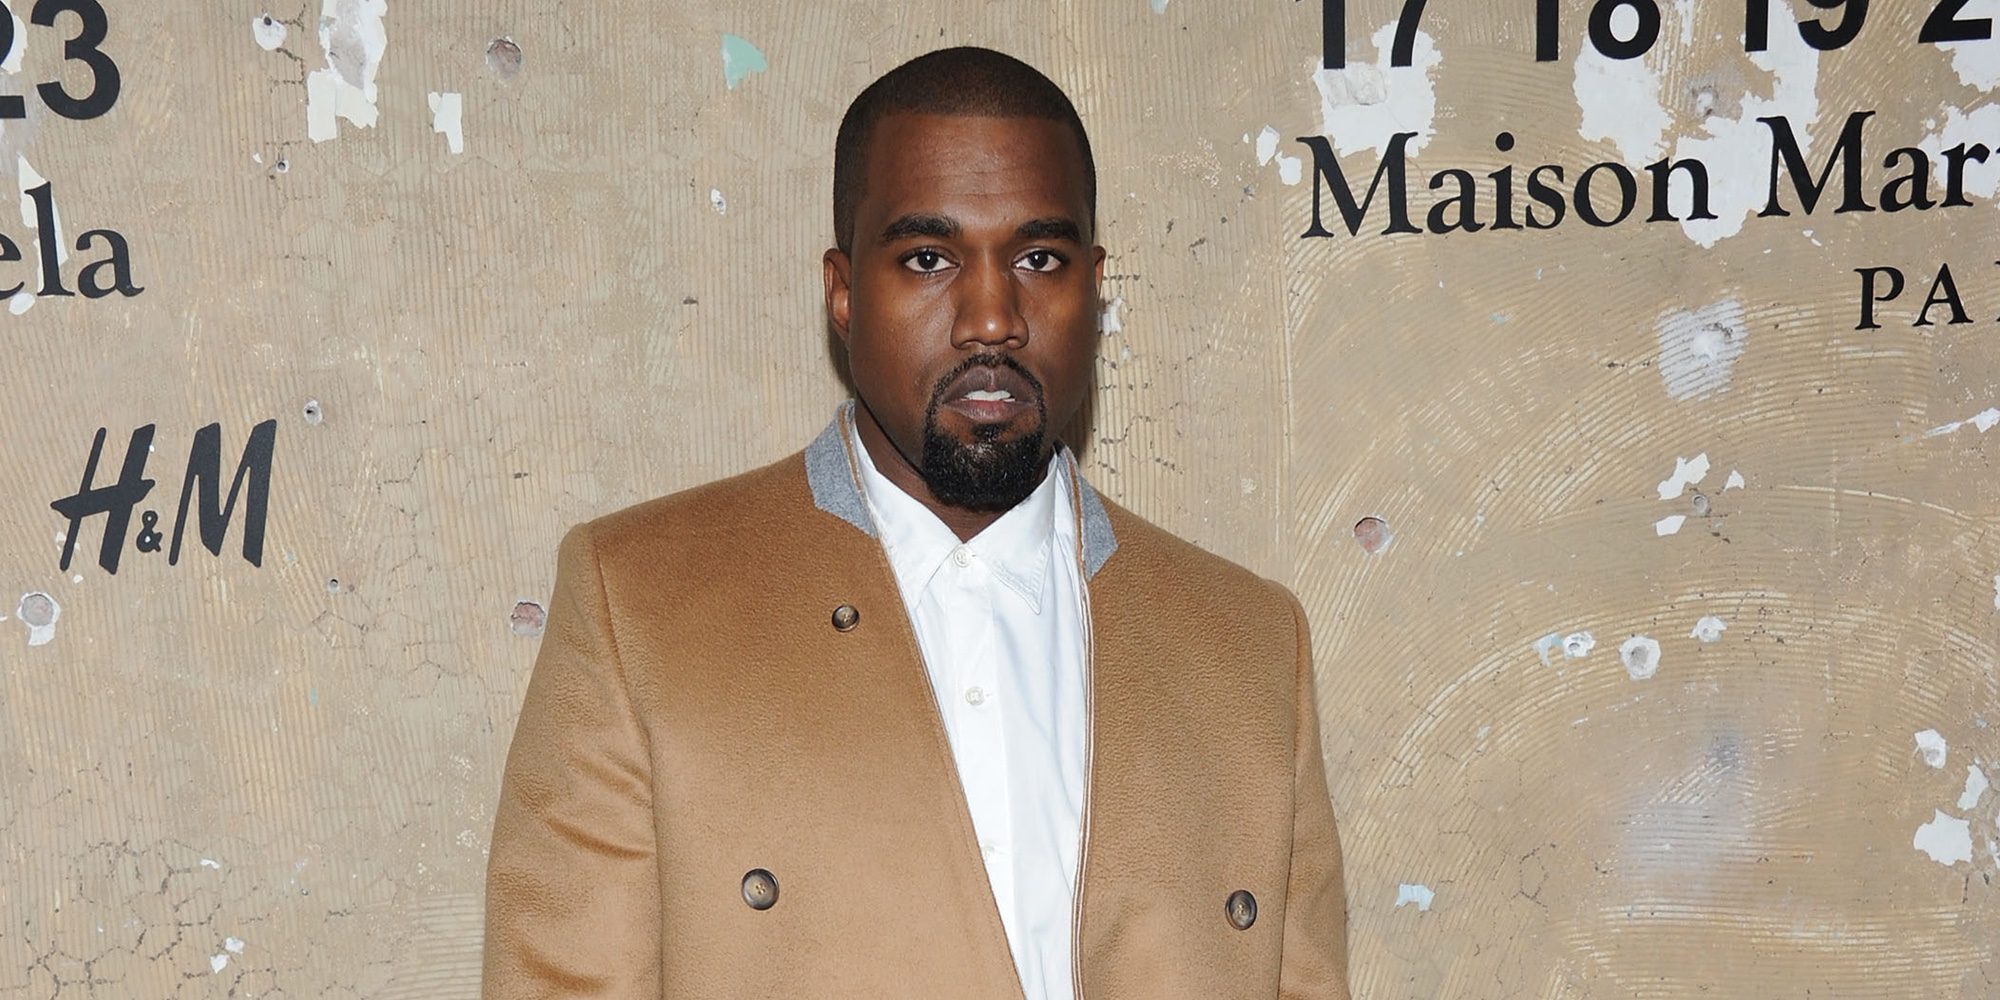 Kanye West ha sido hospitalizado por agotamiento y se ha visto obligado a cancelar su gira